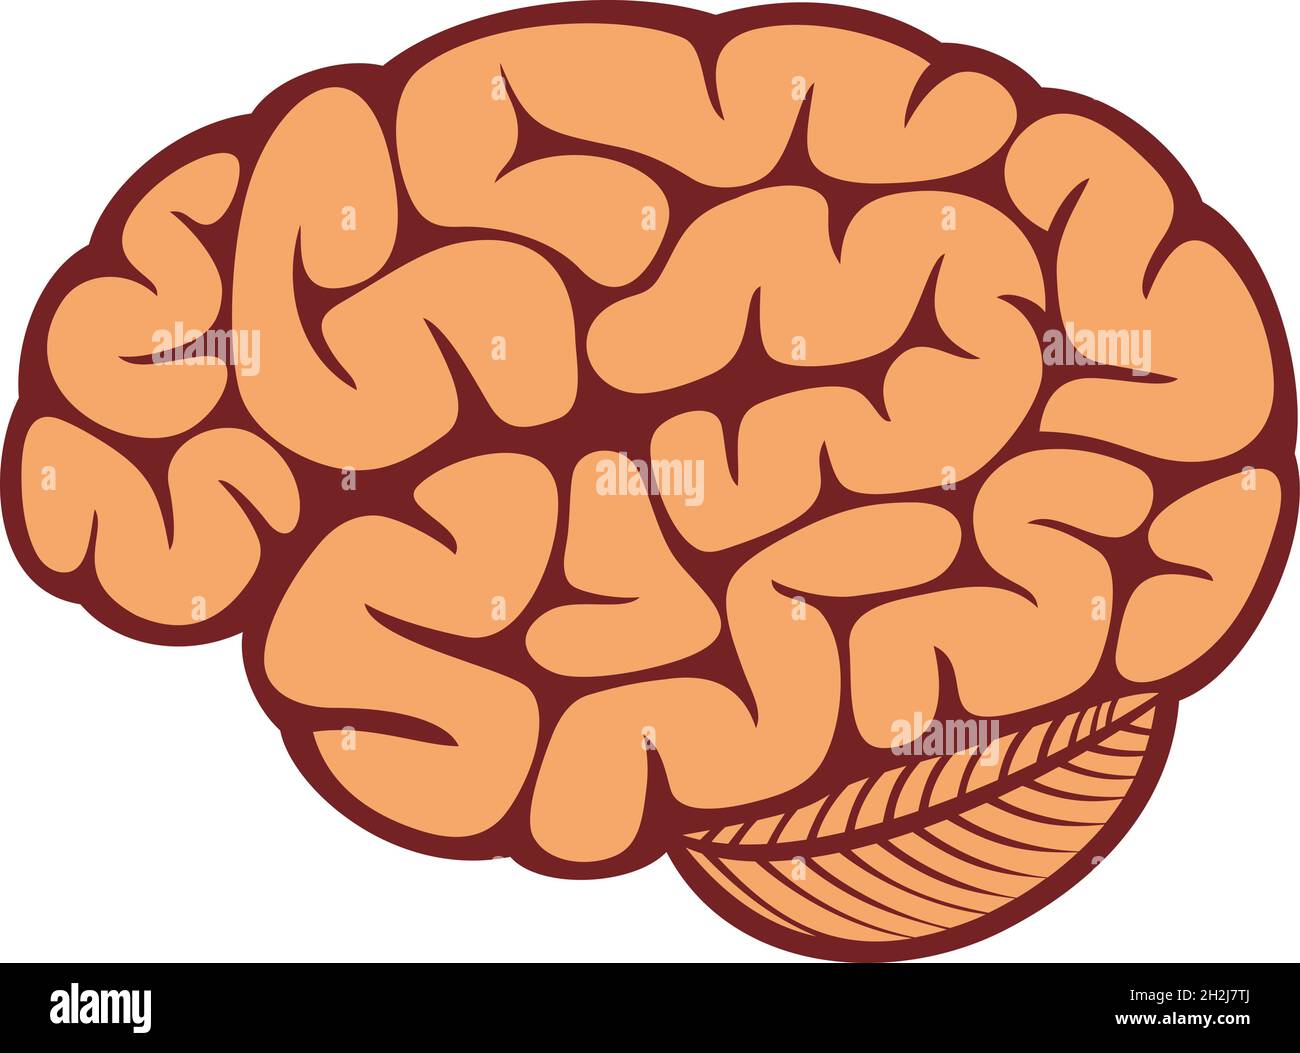 Illustrazione del vettore cerebrale umano Illustrazione Vettoriale